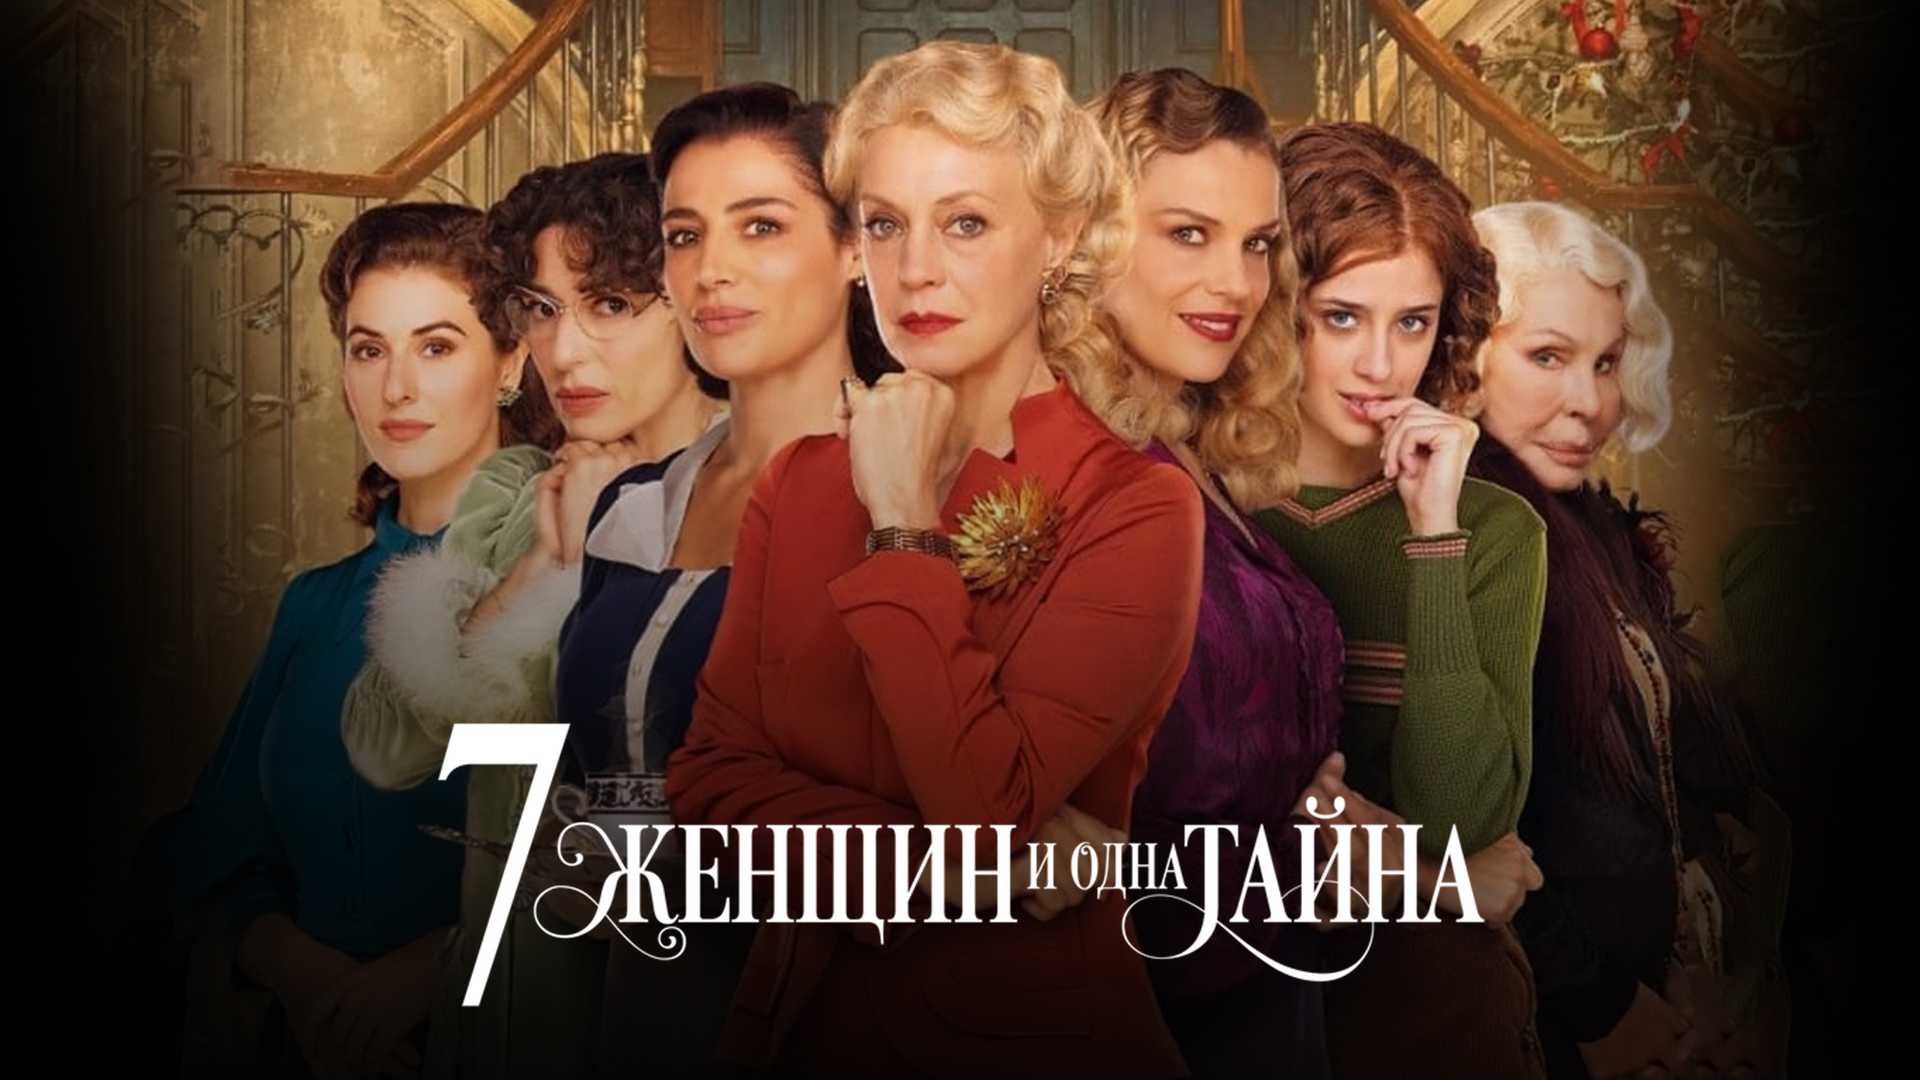 7 женщин и одна тайна